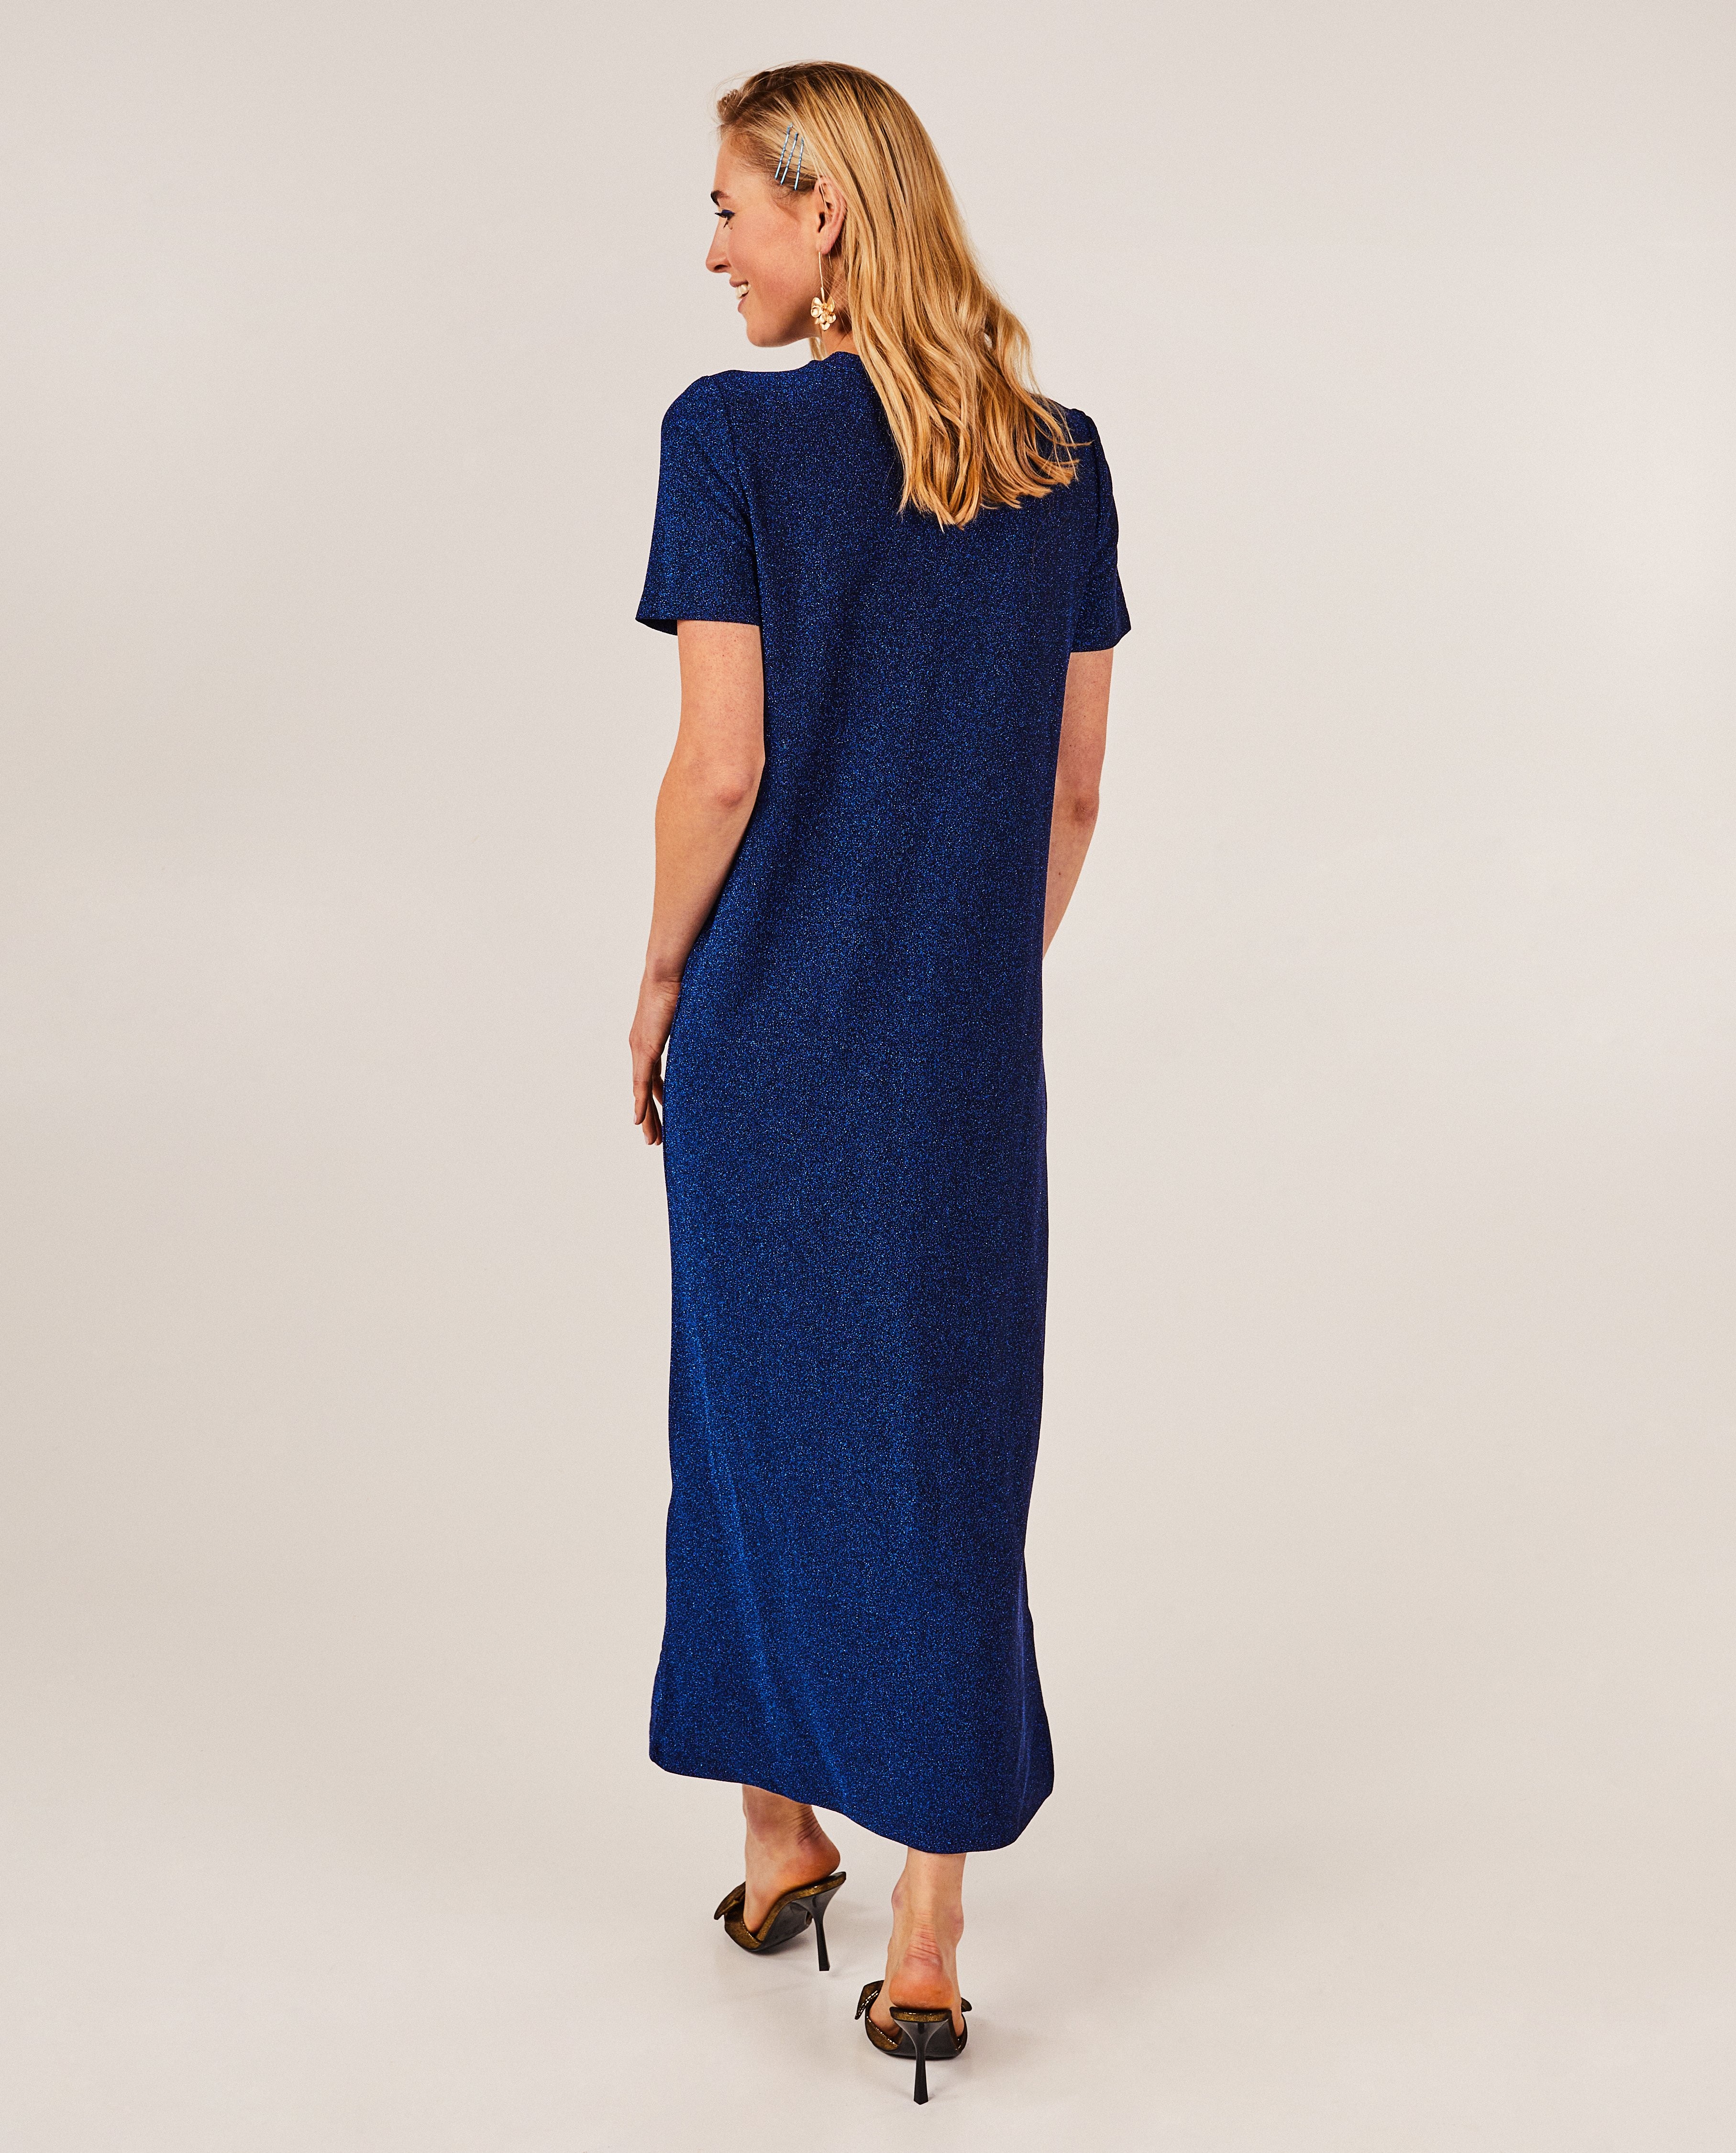 Kleedjes - Blauwe jurk met metaaldraad